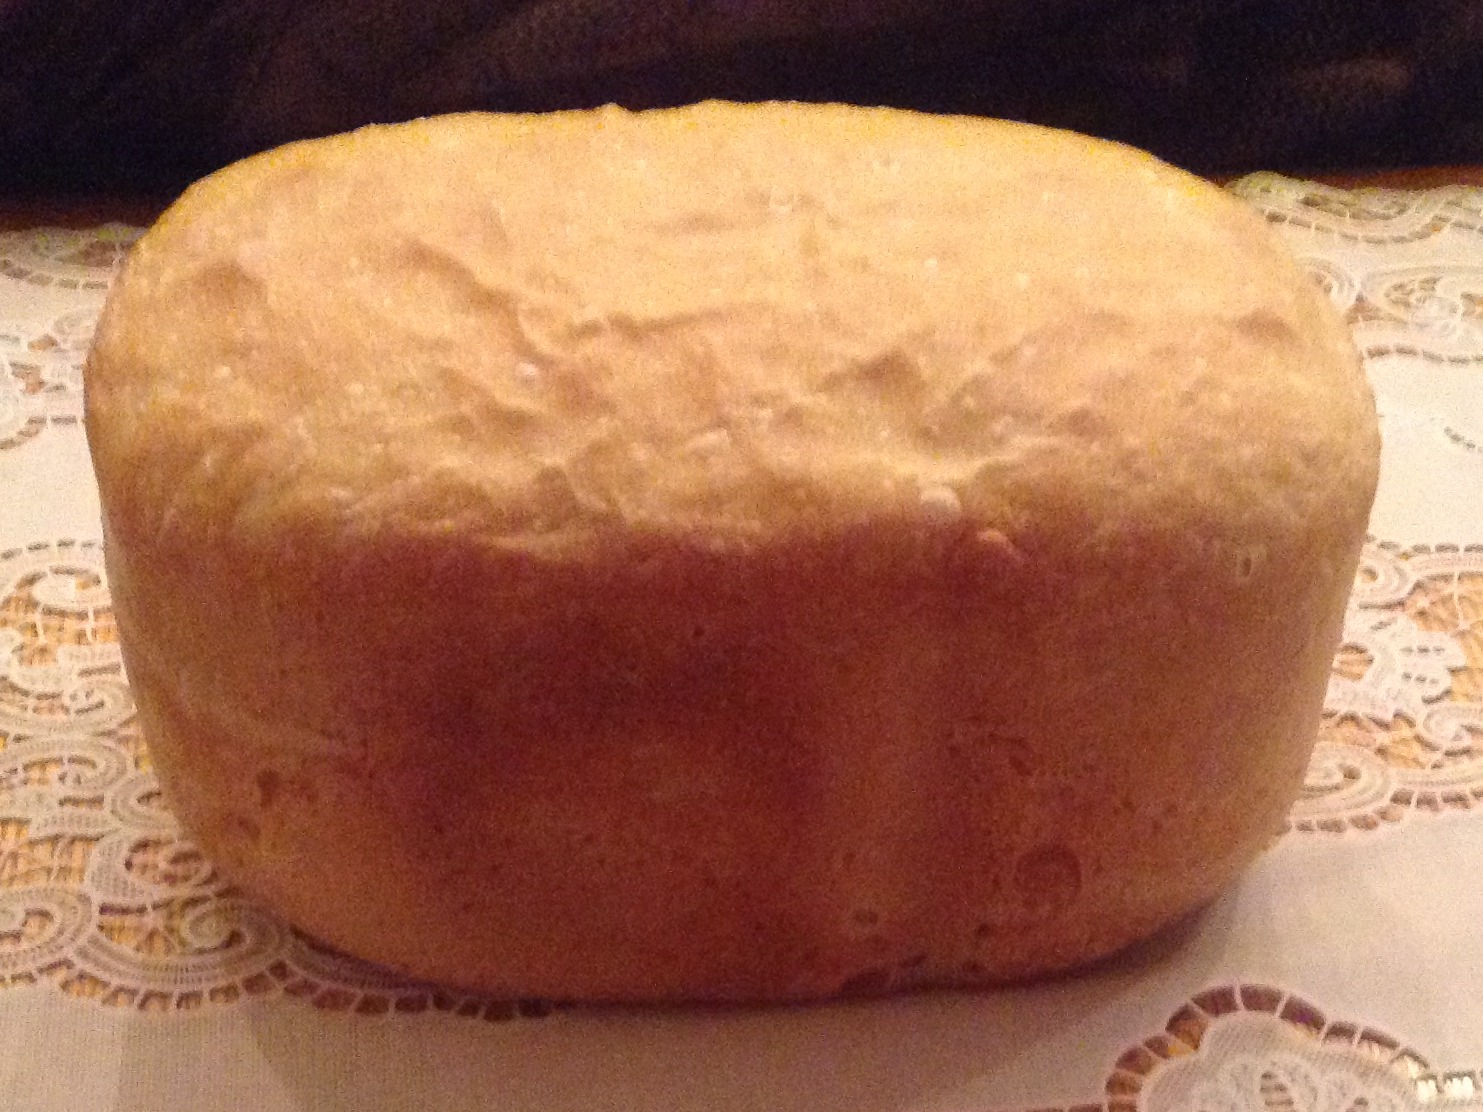 Рецепт хлеба панасоник 2501. Молочный хлеб в хлебопечке Панасоник. Пирожки в хлебопечке. Рецепт кулича в хлебопечке Панасоник 2501. Хлеб в хлебопечке Филипс рецепты простые и вкусные.